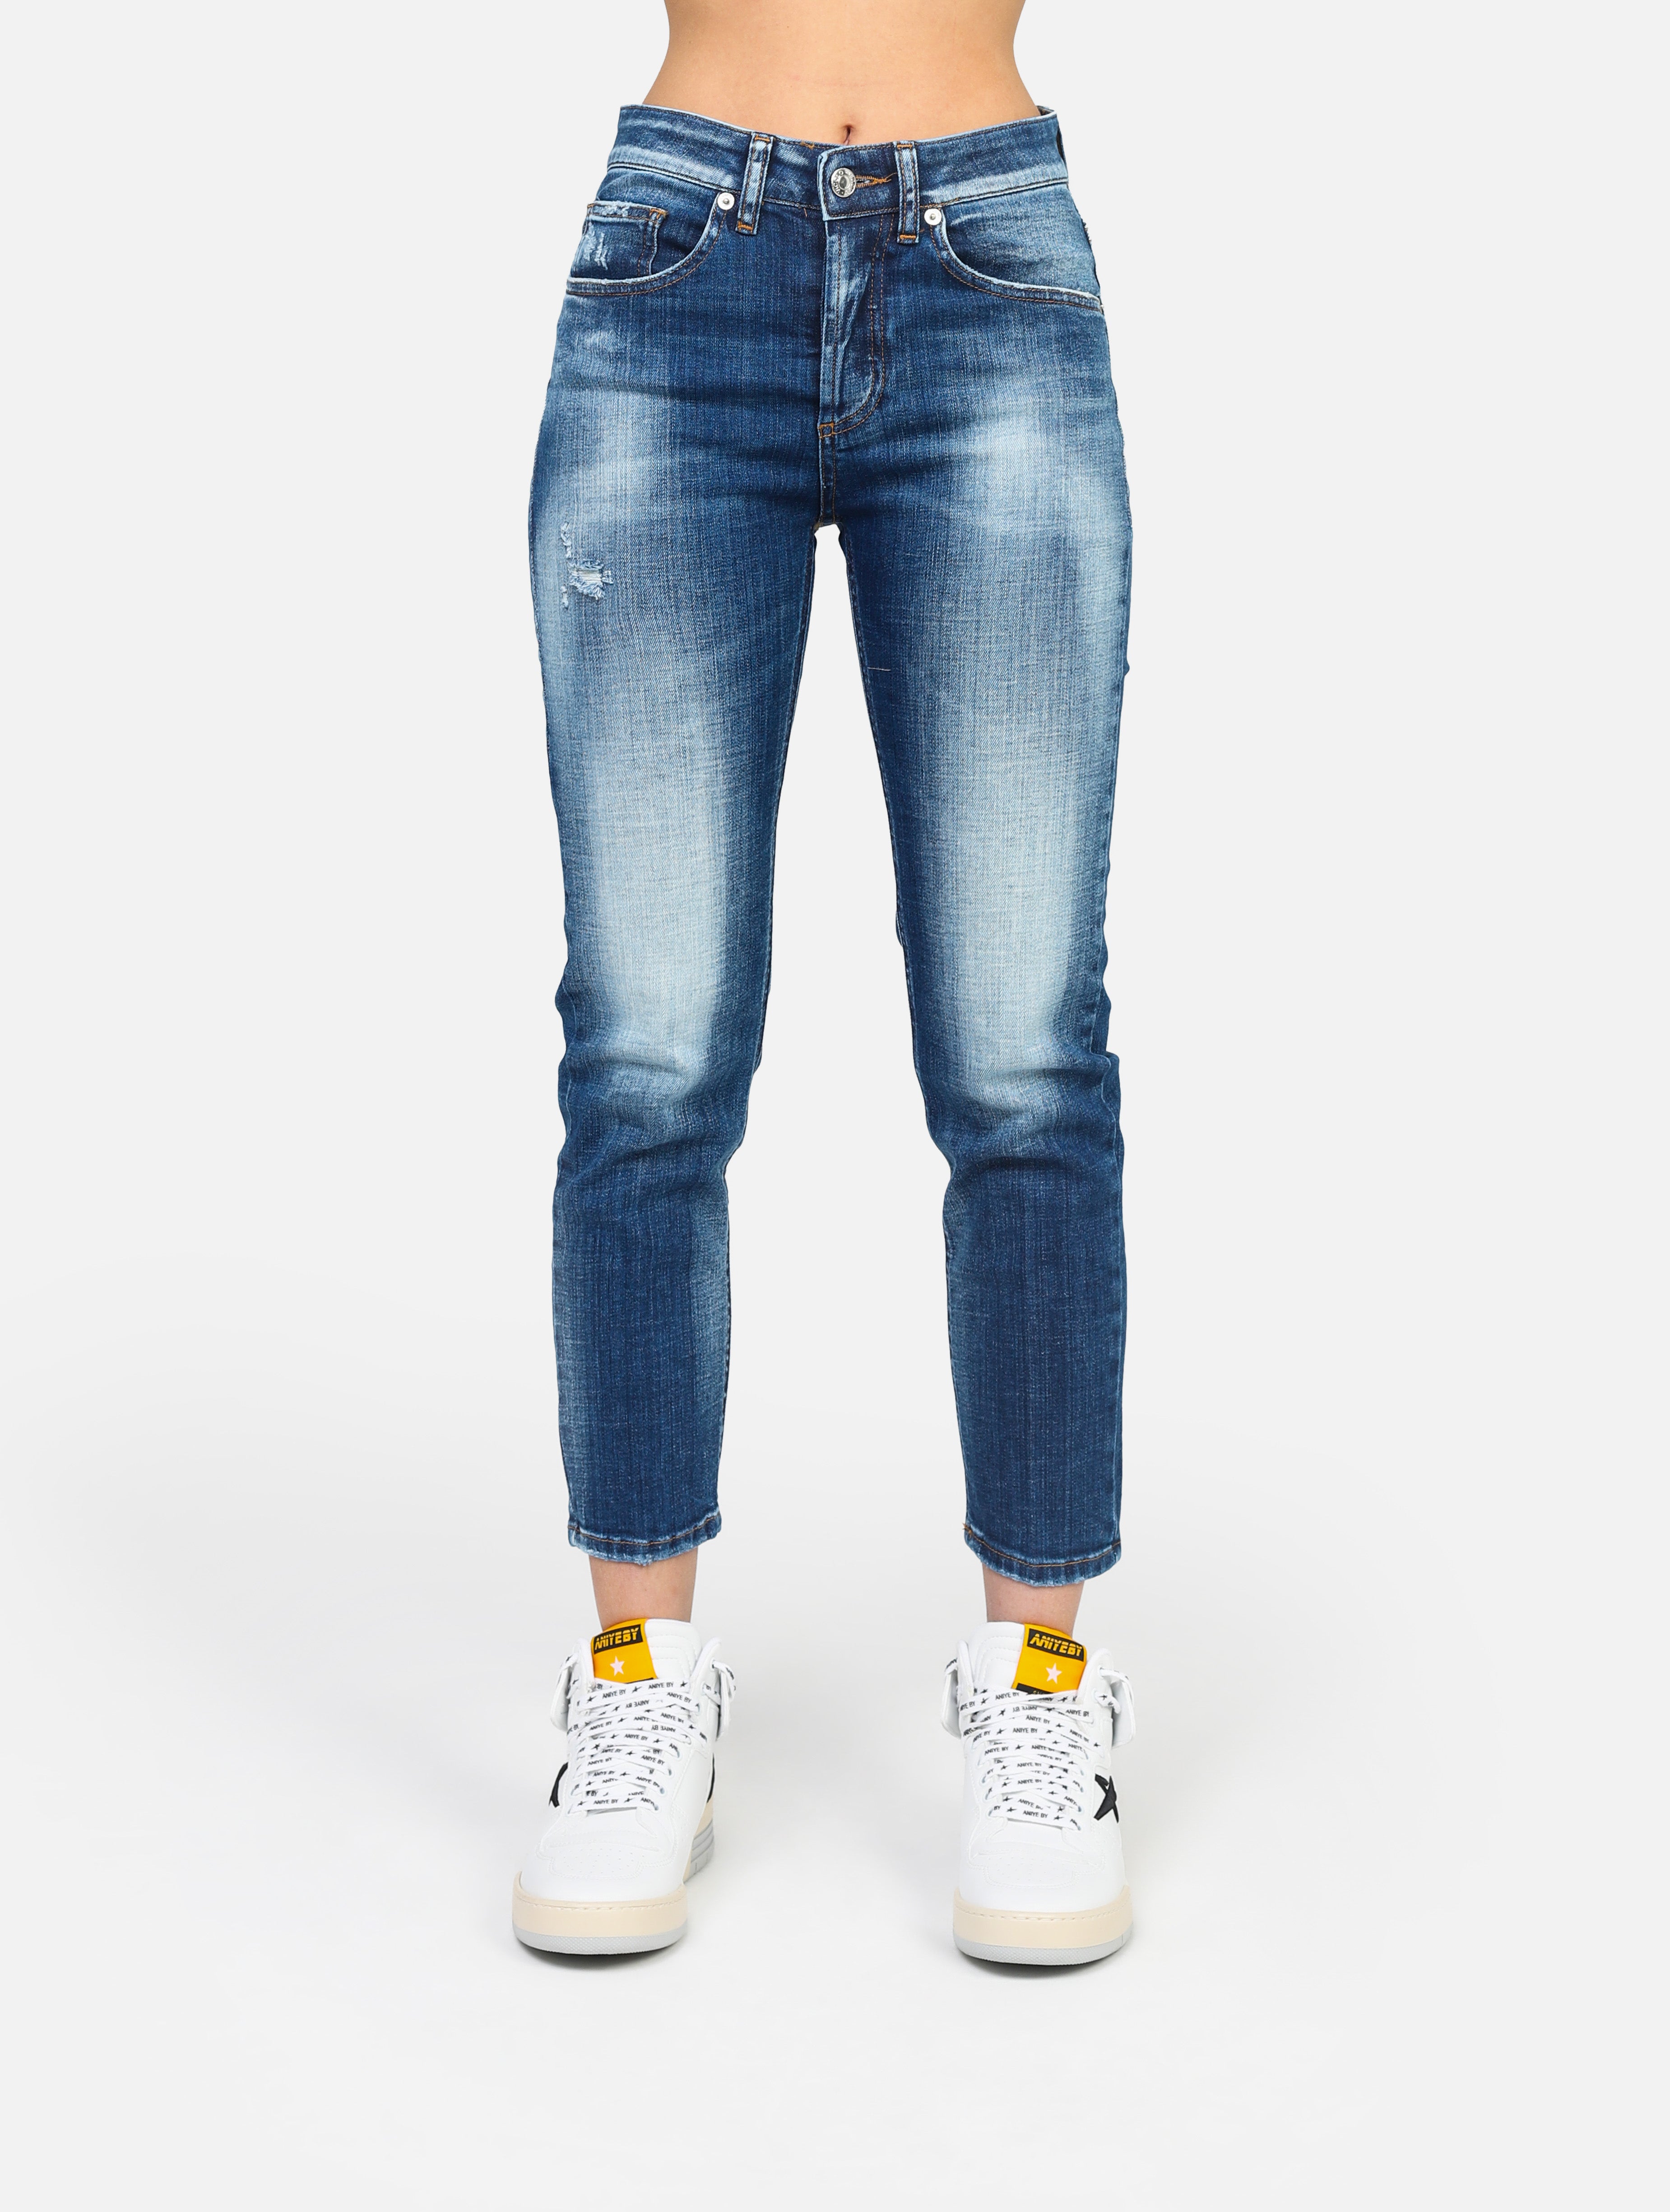 Jeans con 5 tasche daisy , slavato sul ginocchio, 1 piccola abrasione sotto la tasca, chiusura tutti bottoni - DE5110DENIM